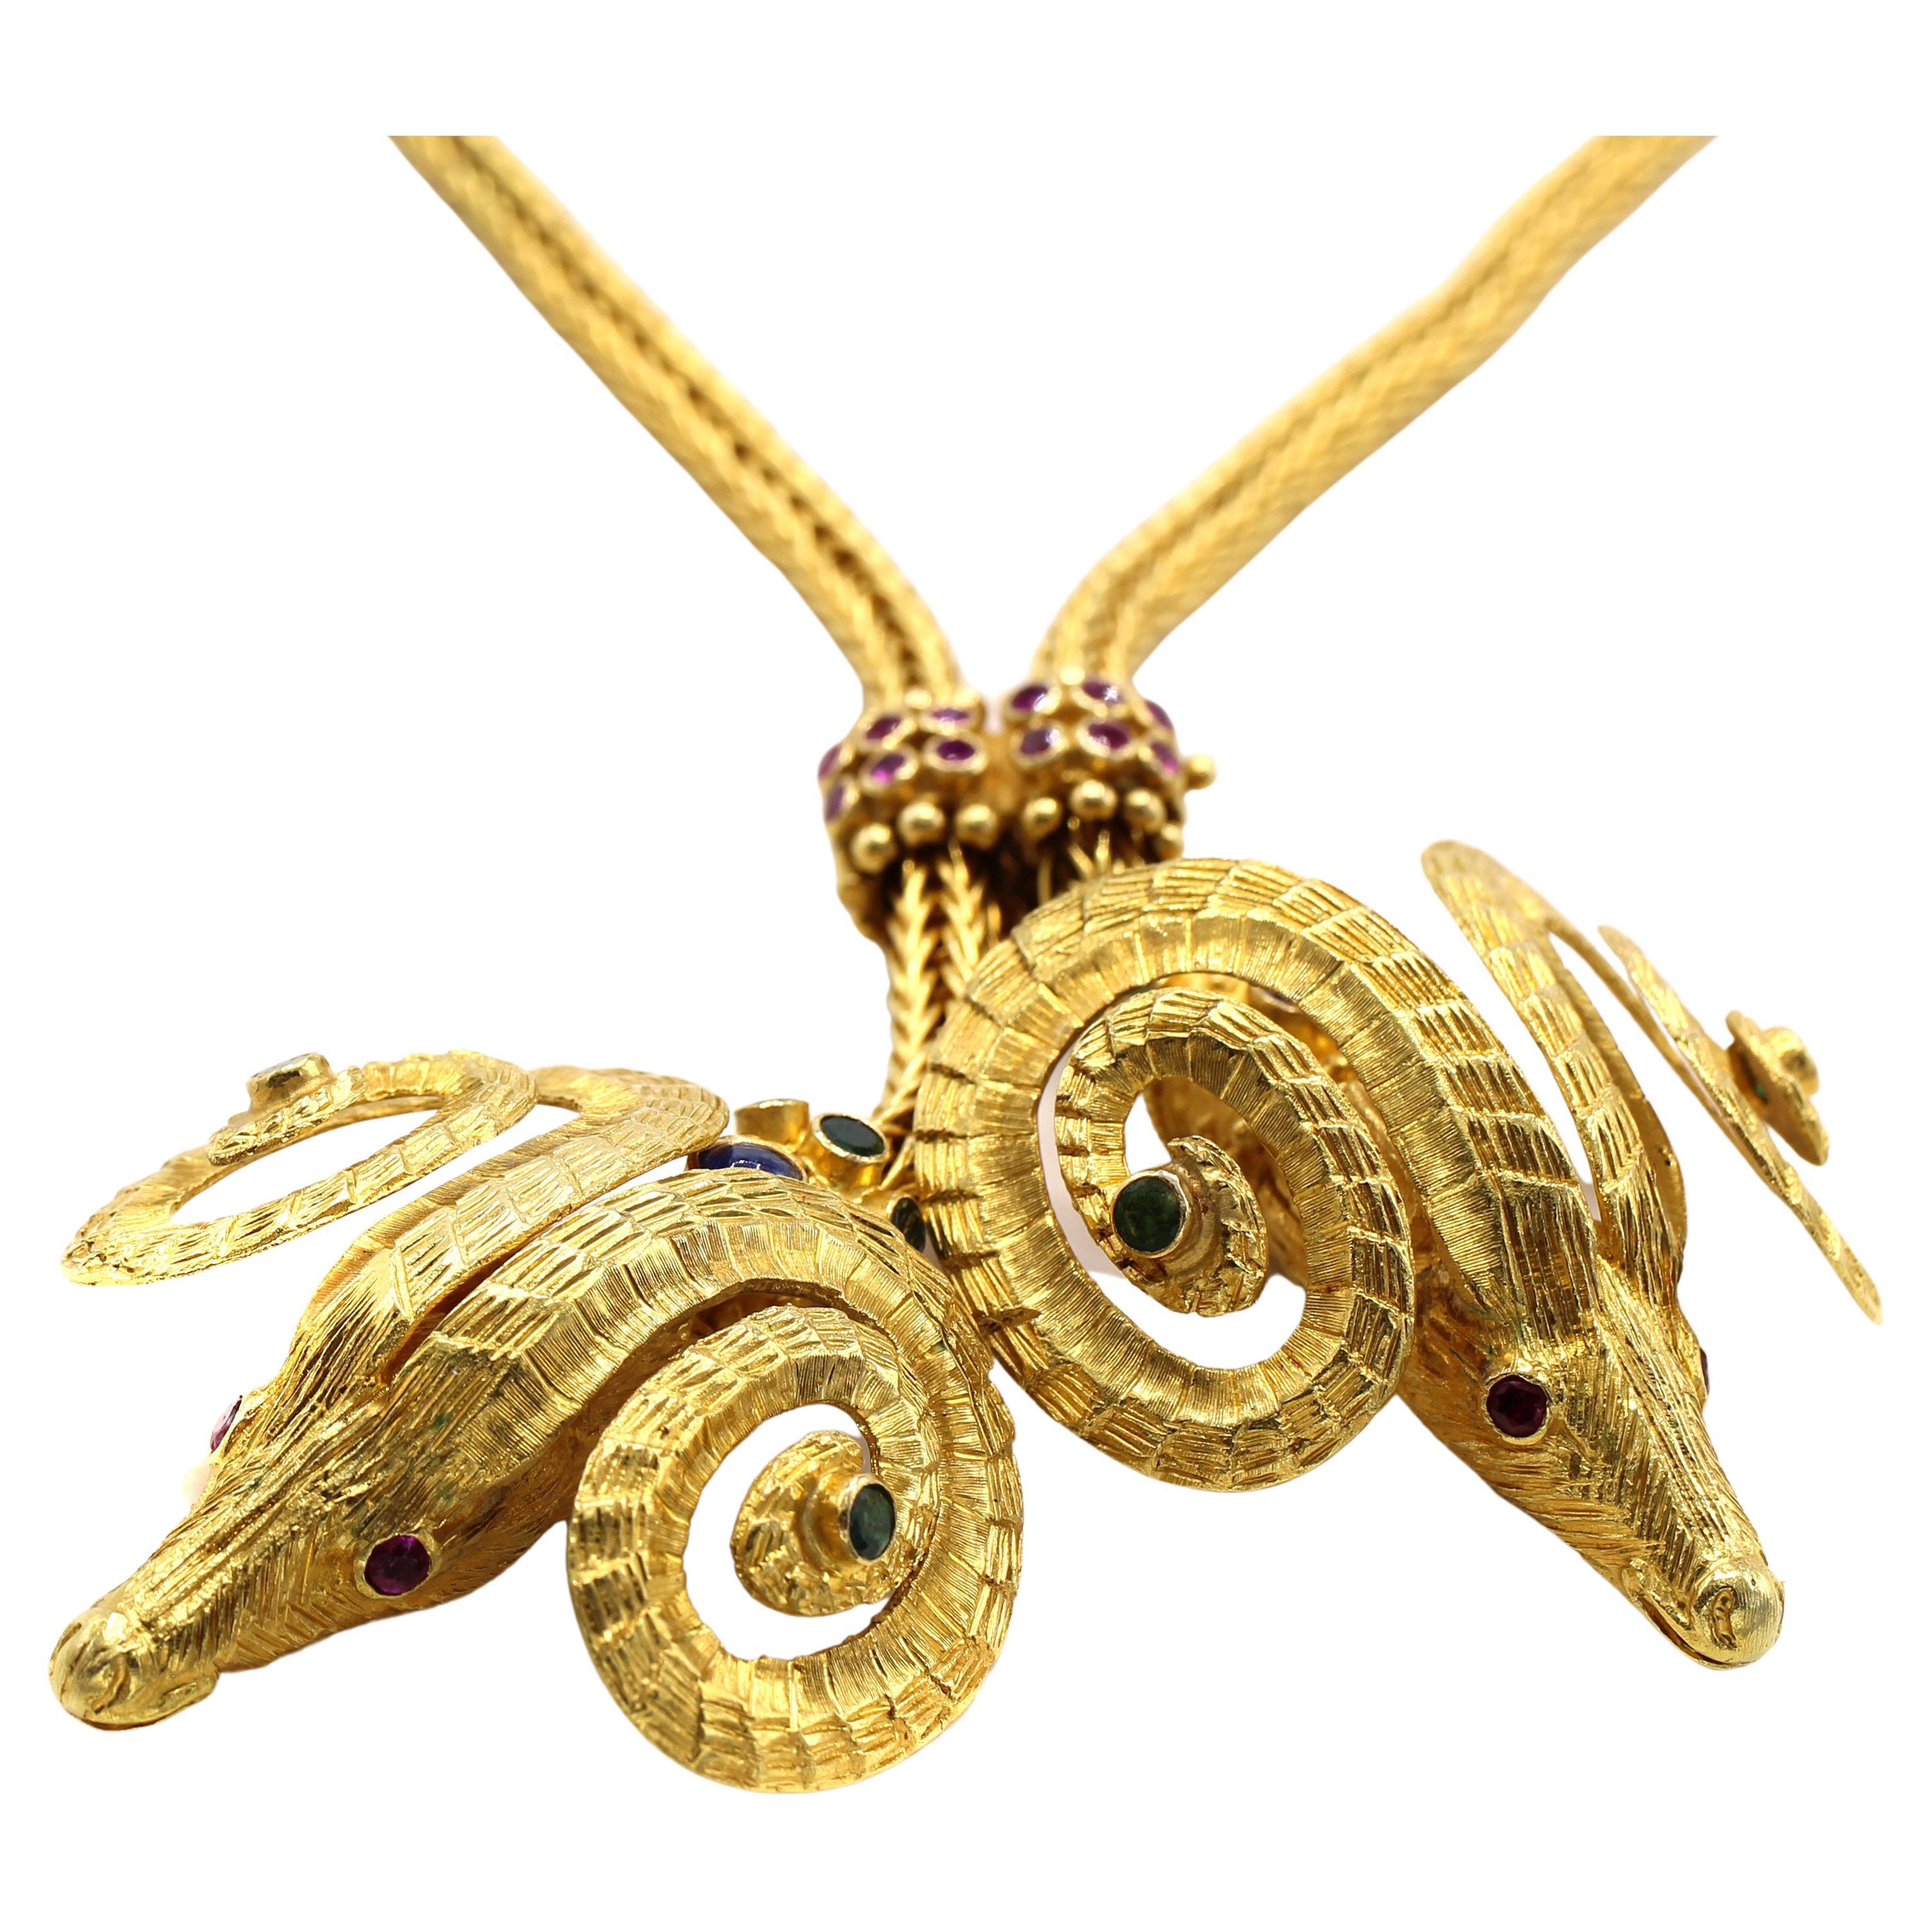 Dieses schicke und äußerst tragbare Collier wurde von dem berühmten griechischen Juwelier Ilias Lalaounis entworfen und in Handarbeit gefertigt. Es besteht aus 2 Widderköpfen, die mit Rubinen, Smaragden und Saphiren besetzt sind und aus fein